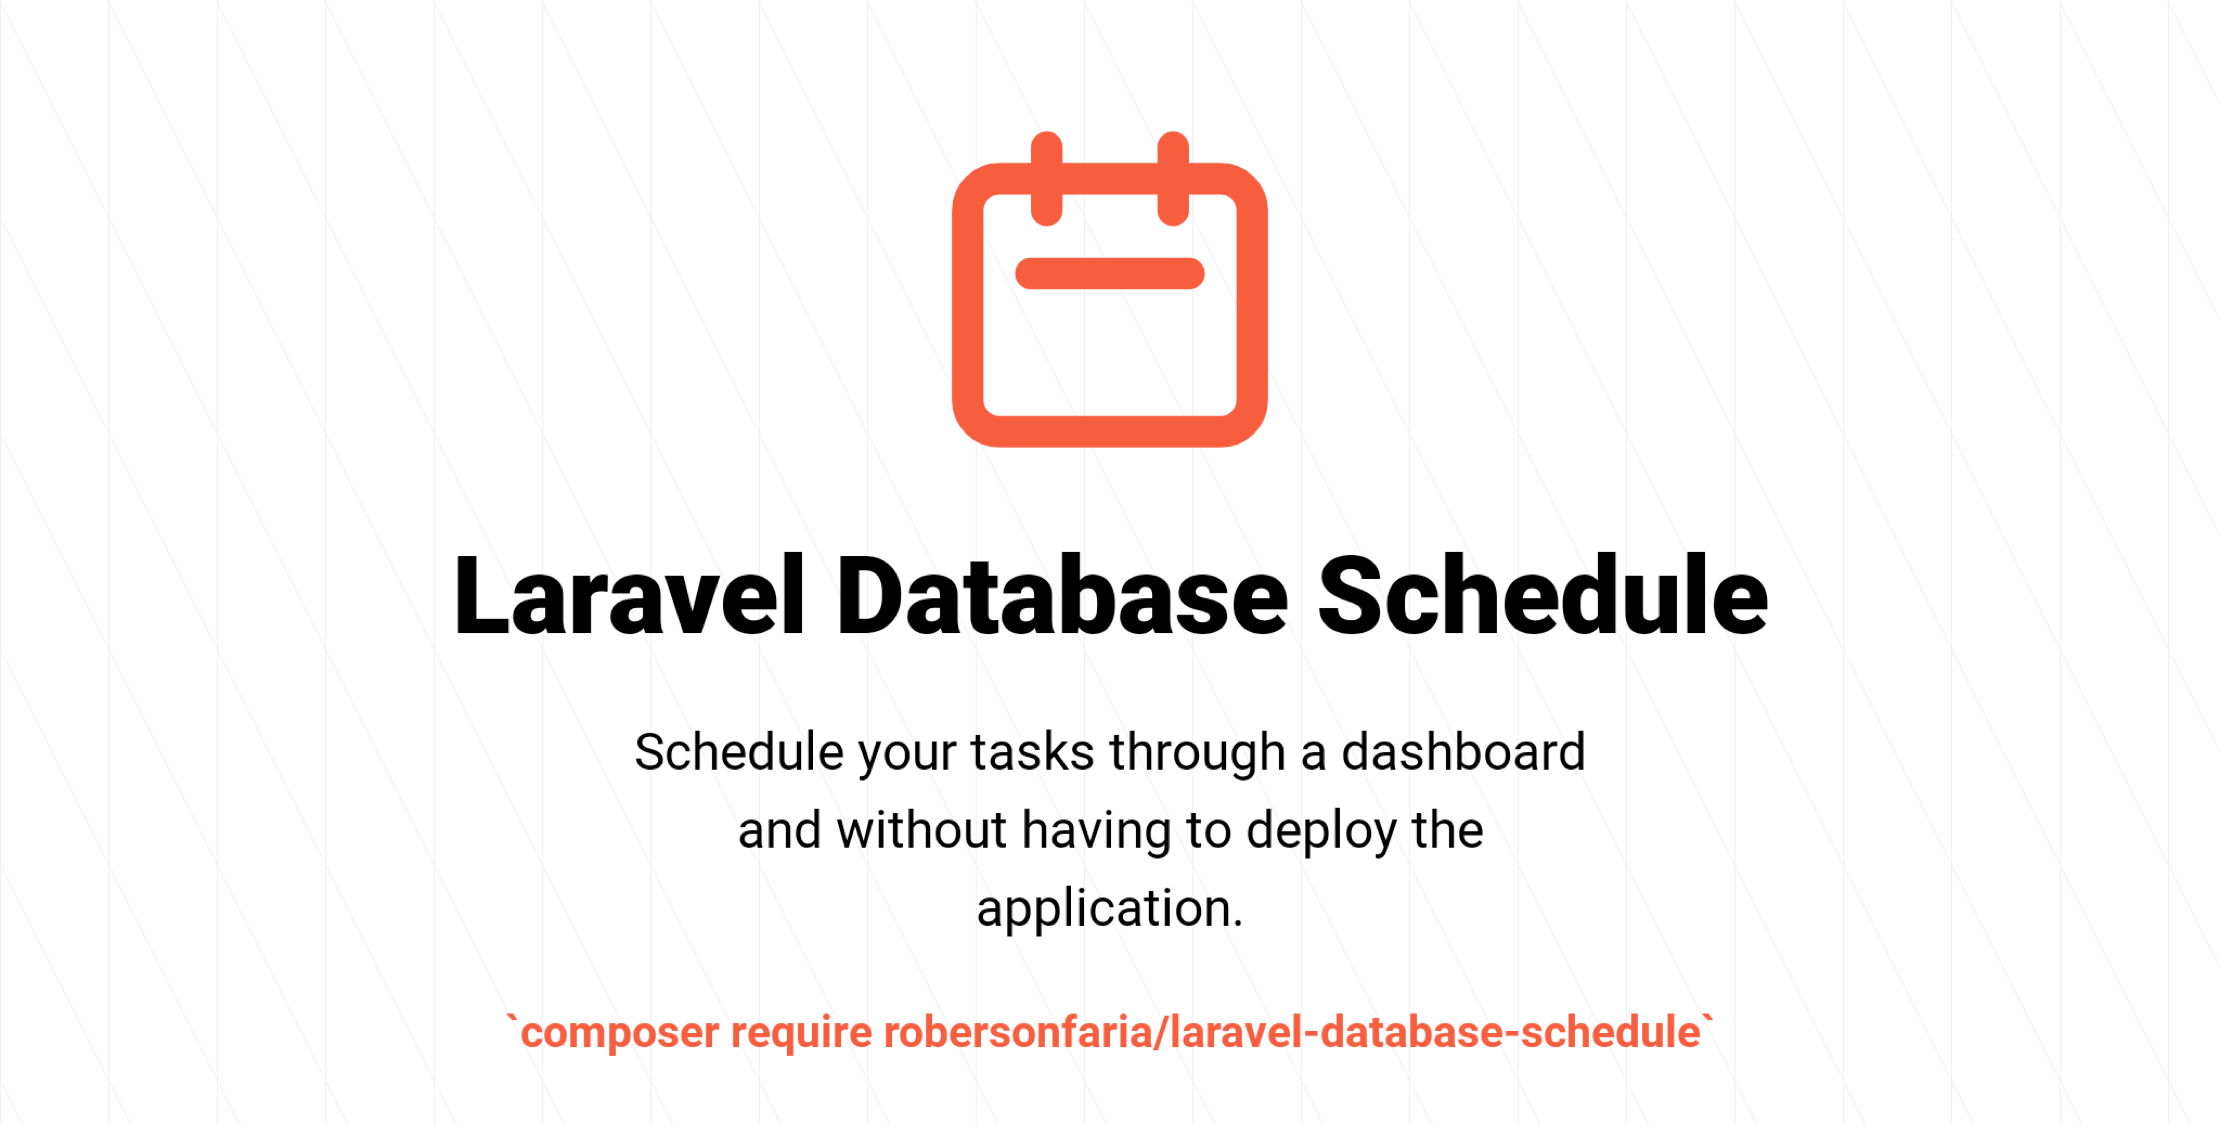 Manage Scheduled Tasks Through a Dashboard image